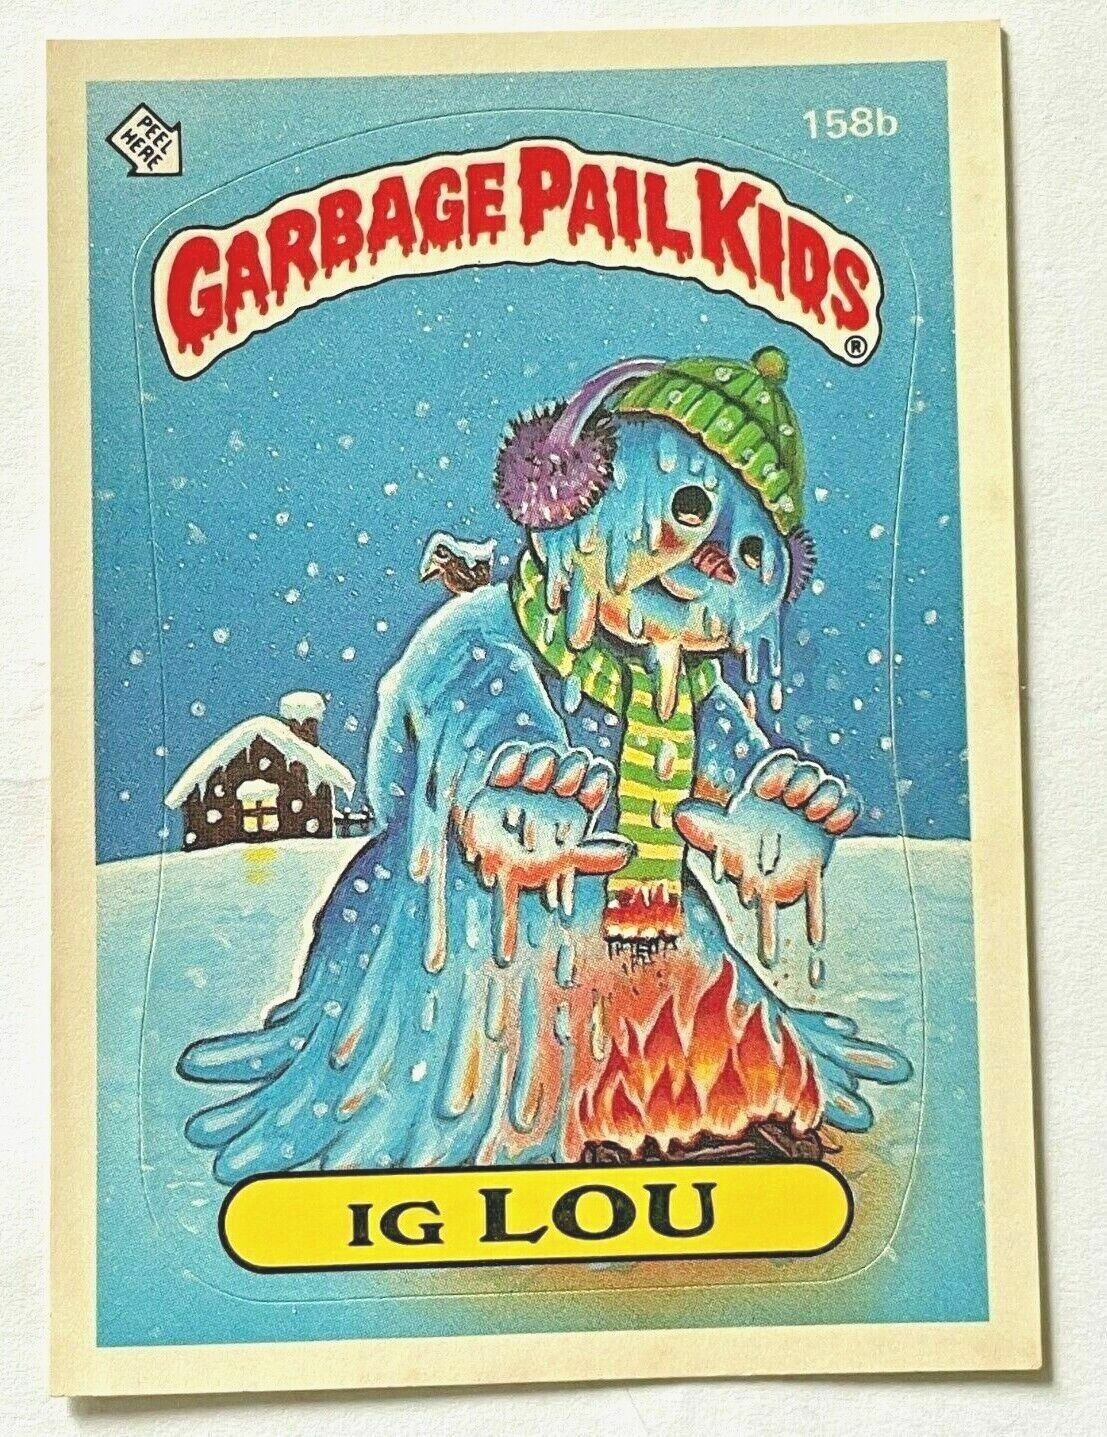 1986 Topps 4th Series Garbage Pail Kids 158b IG LOU C-Name Change Trading Card